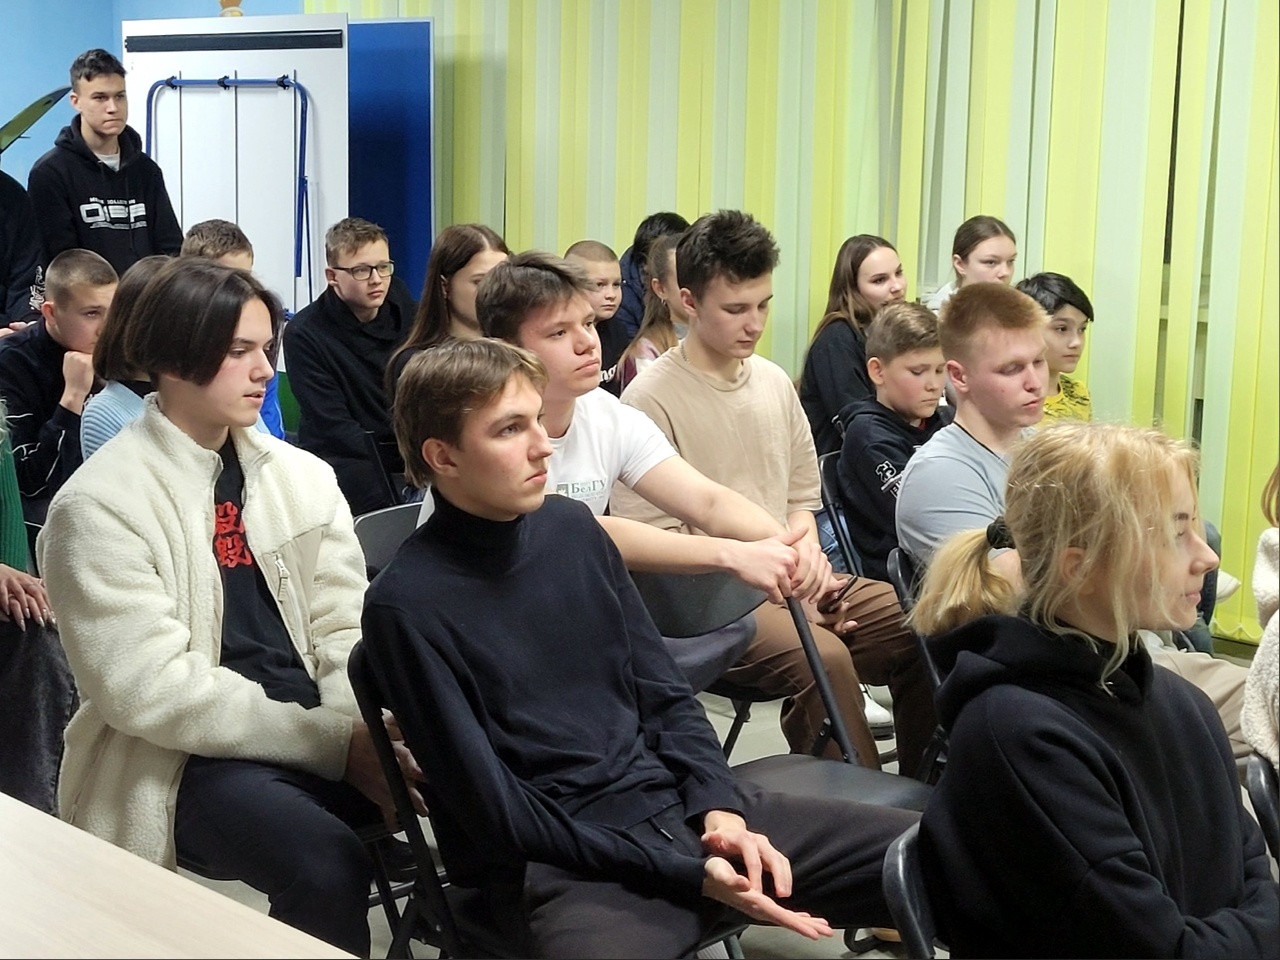 Клуб «На одной волне» помогает социализироваться в обществе подросткам Белгородского района.